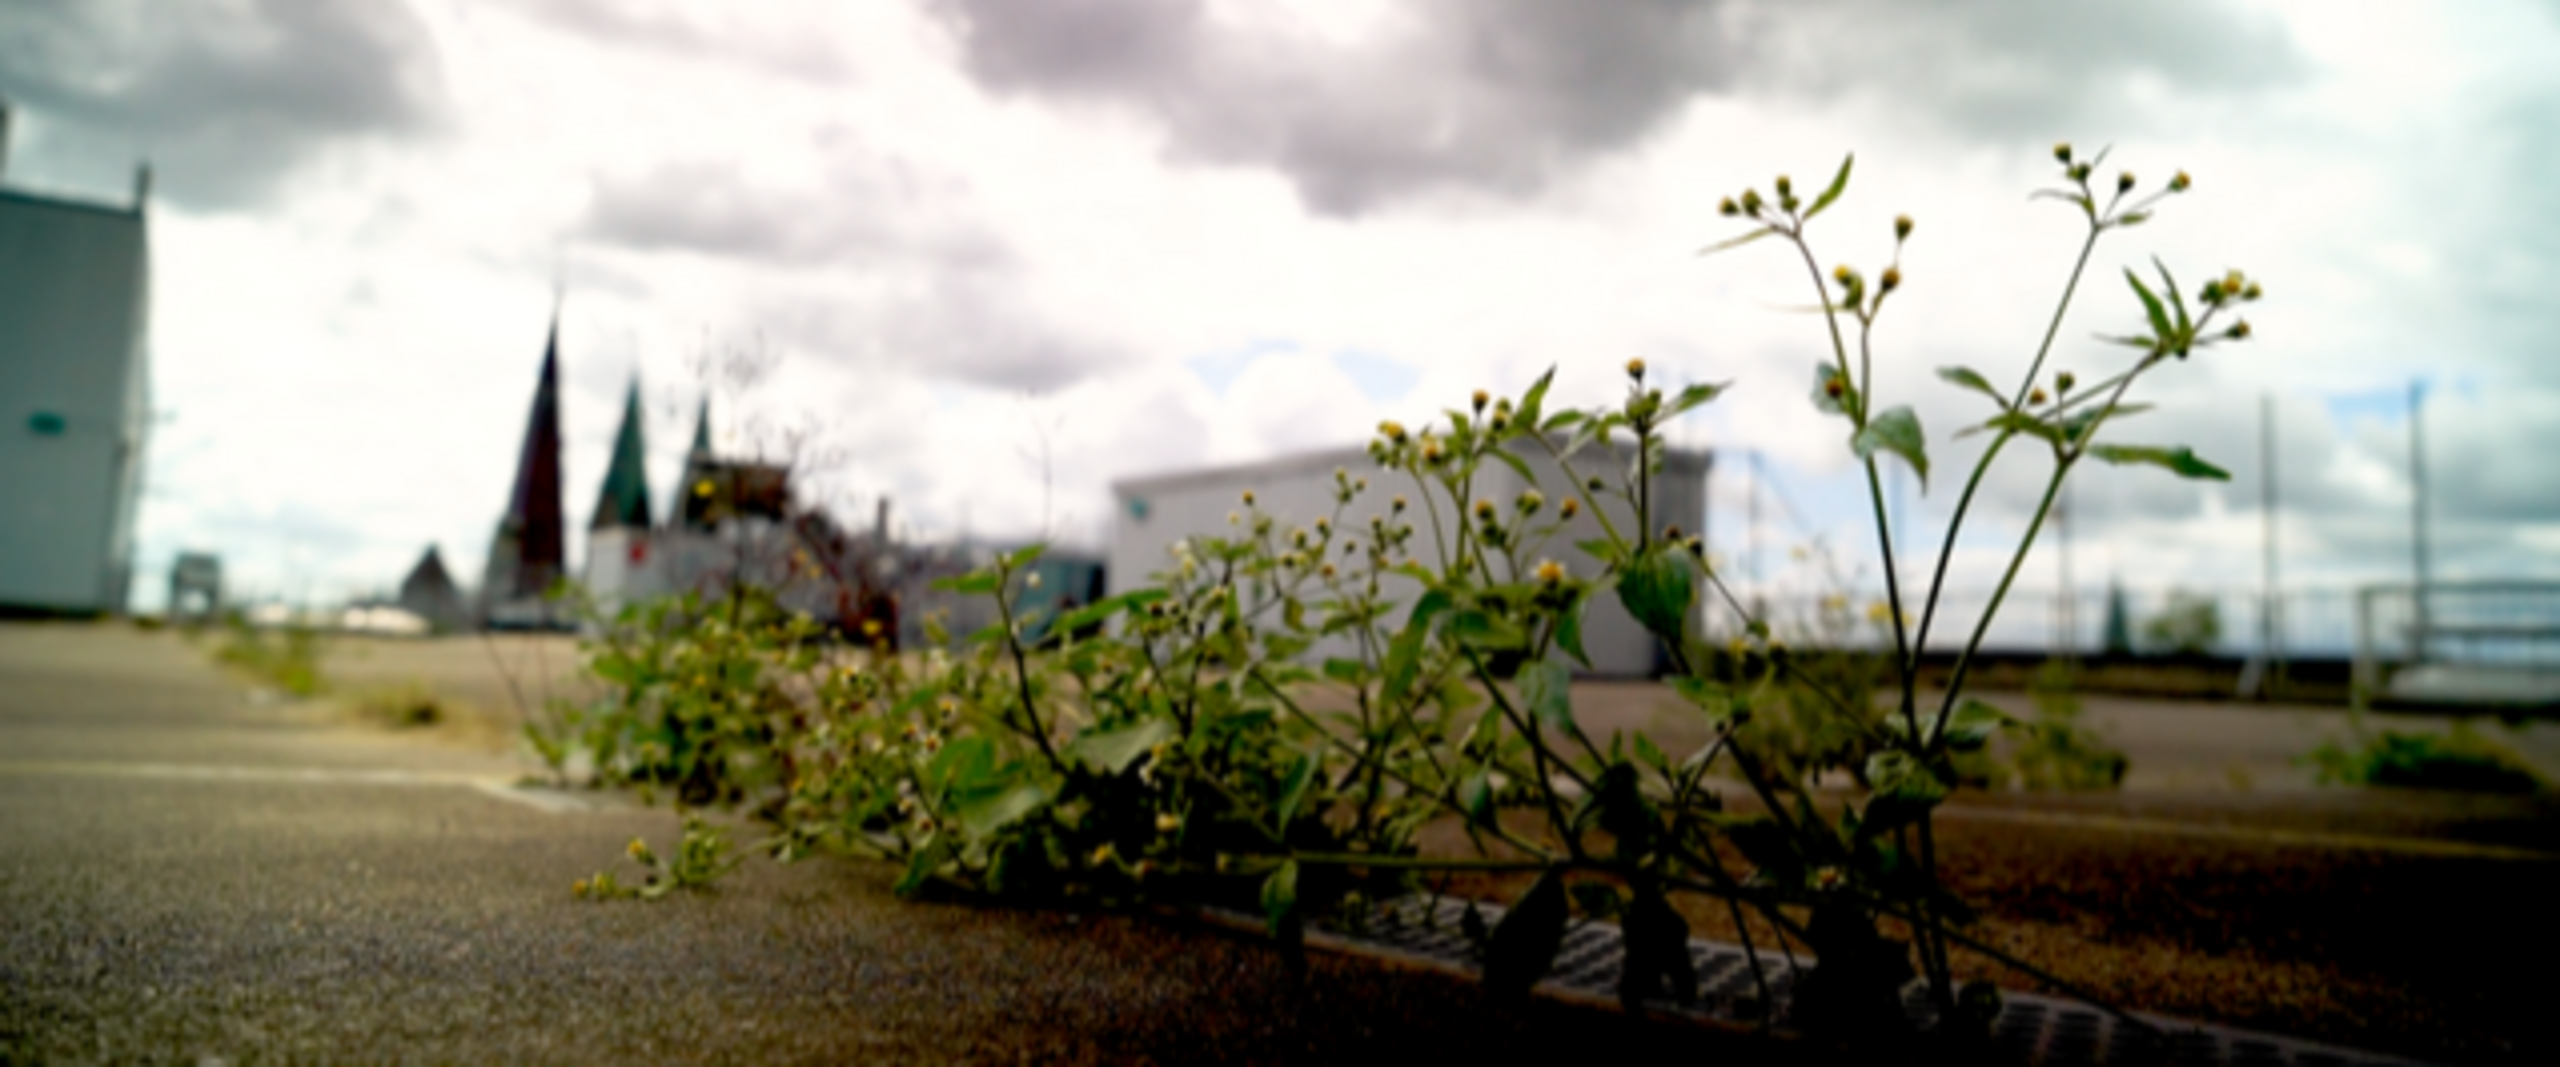 Grünpflanzen auf einem Dach mit Blick auf die Stadt. Foto: Filmstill © thomas lippick, beatrix-schwehm-film 2021